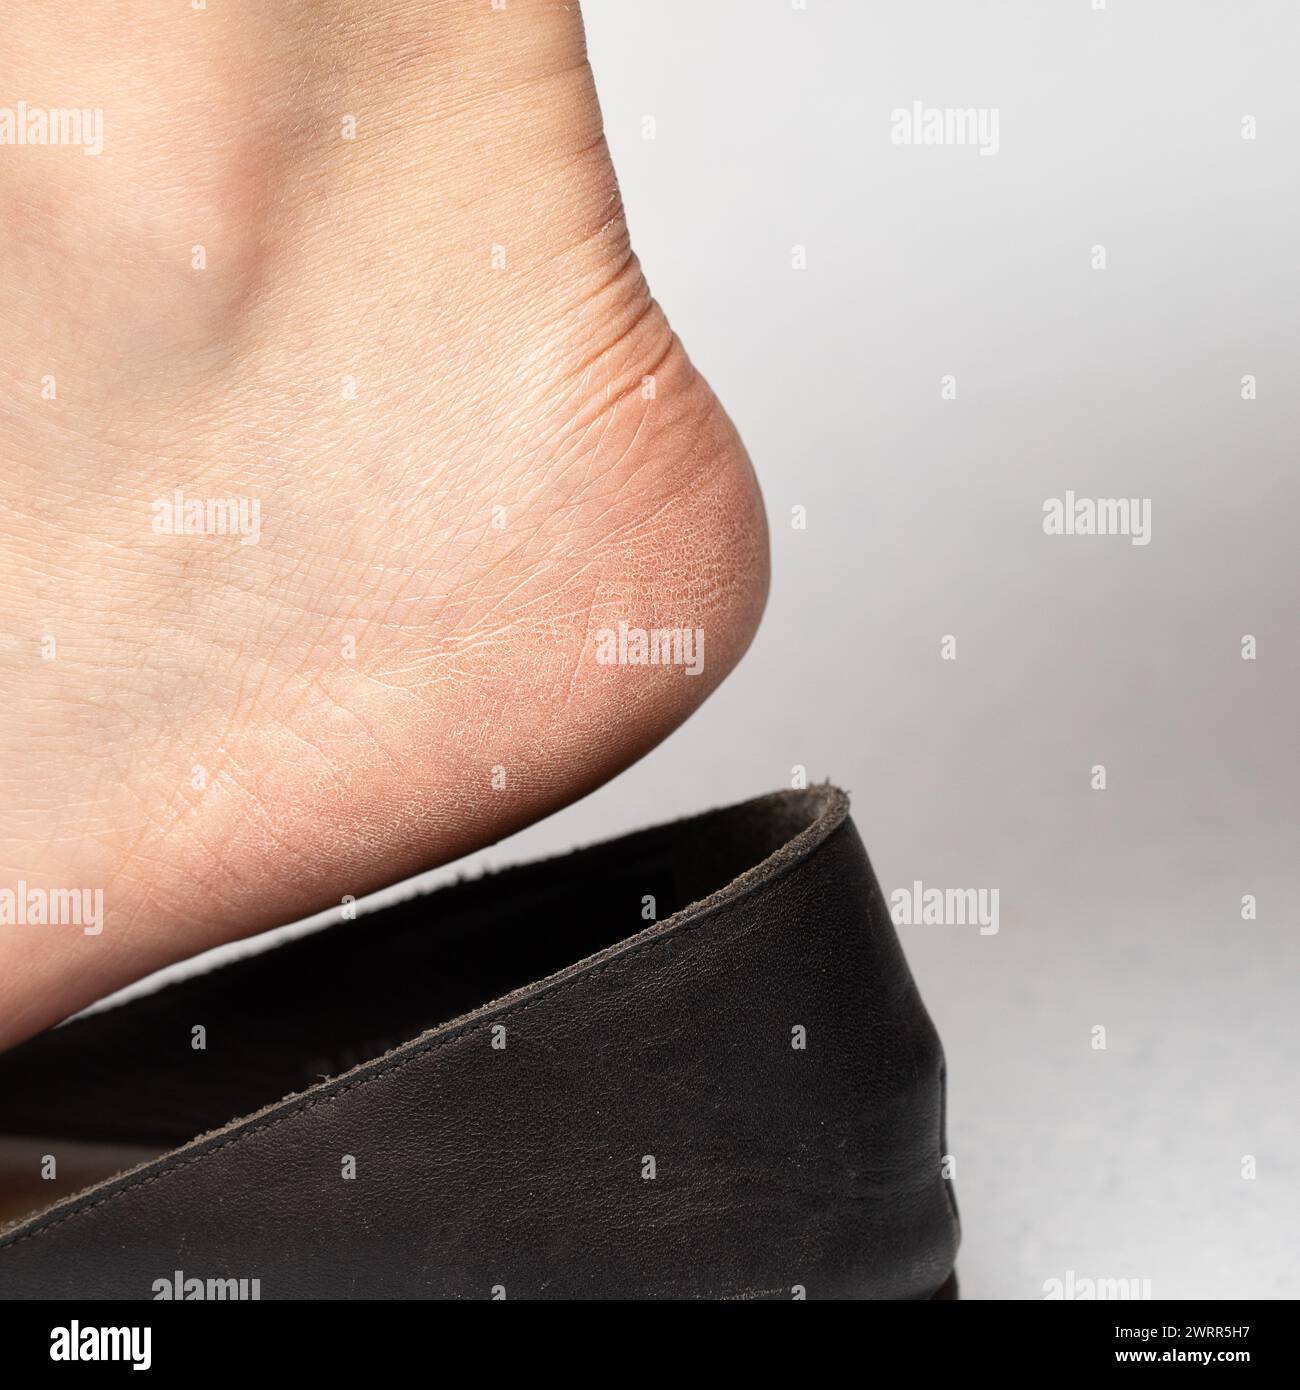 Image détaillée d'un pied avec une peau sèche et fissurée sur le talon, entrant dans une chaussure noire à enfiler, soulignant la nécessité d'hydrater le pied Banque D'Images